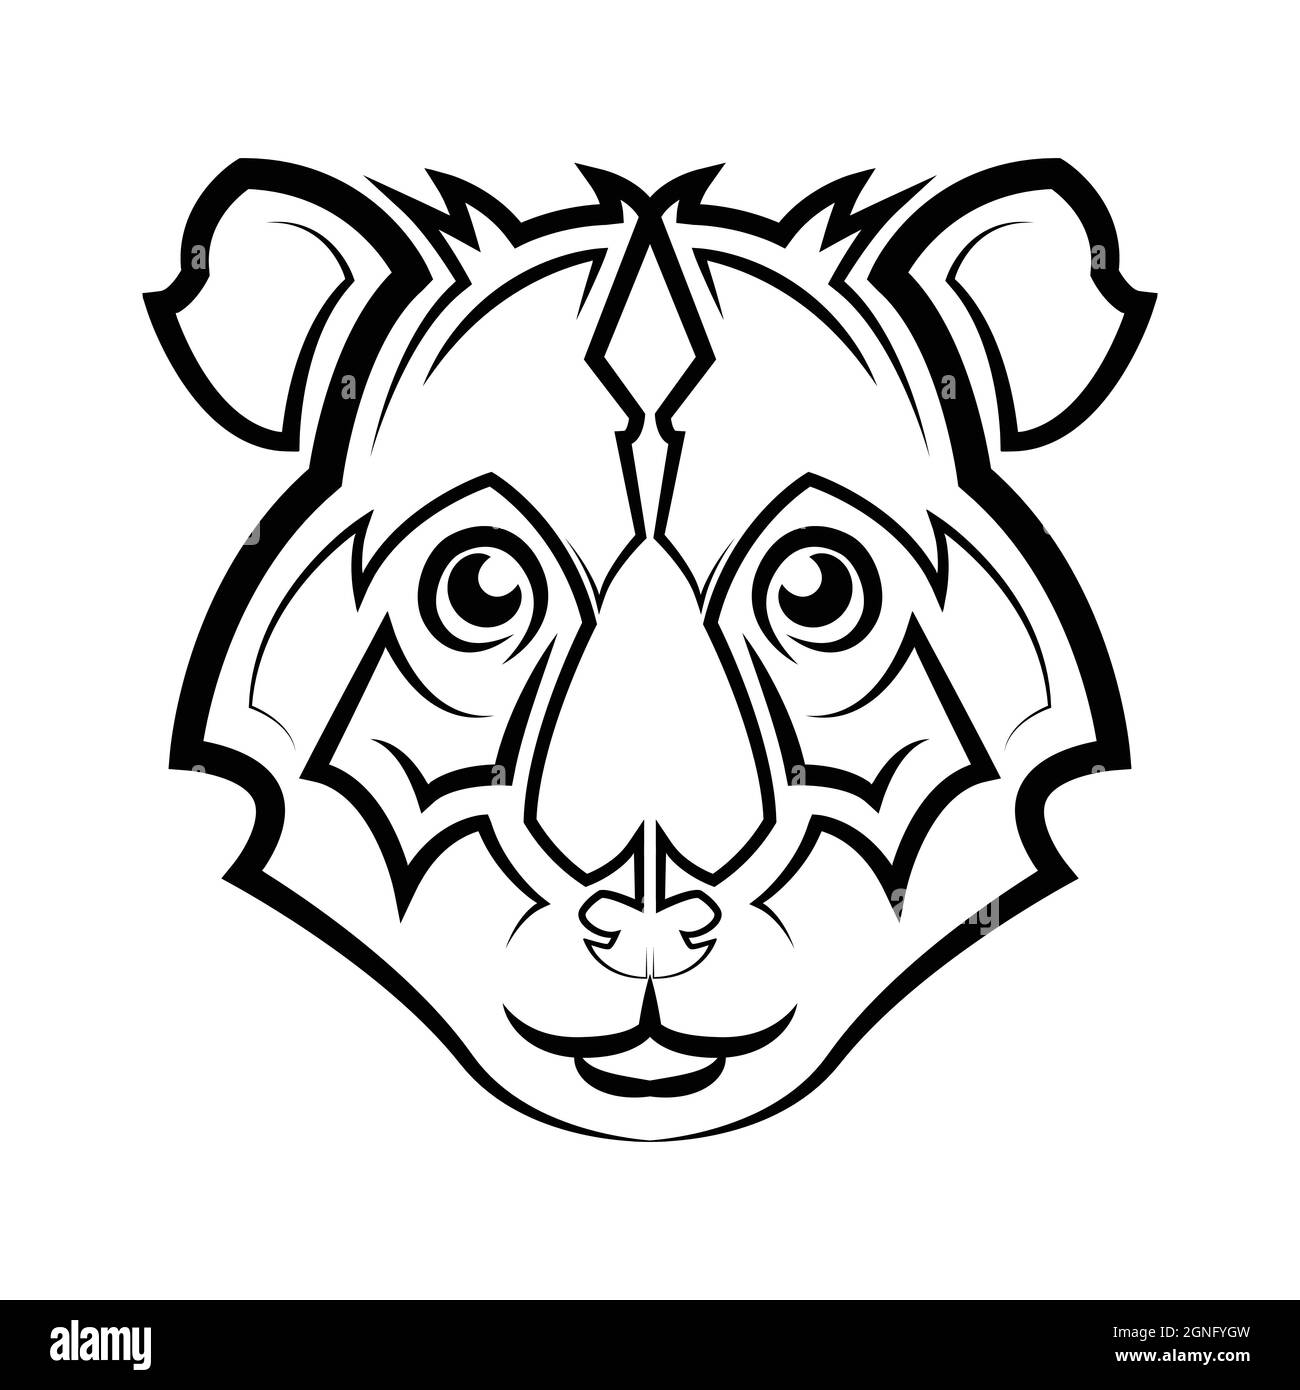 Schwarz-weiße Linienkunst des Hamsterkopfes. Gute Verwendung für Symbol, Maskottchen, Symbol, Avatar, Tattoo, T-Shirt-Design, Logo oder ein beliebiges Design. Stock Vektor